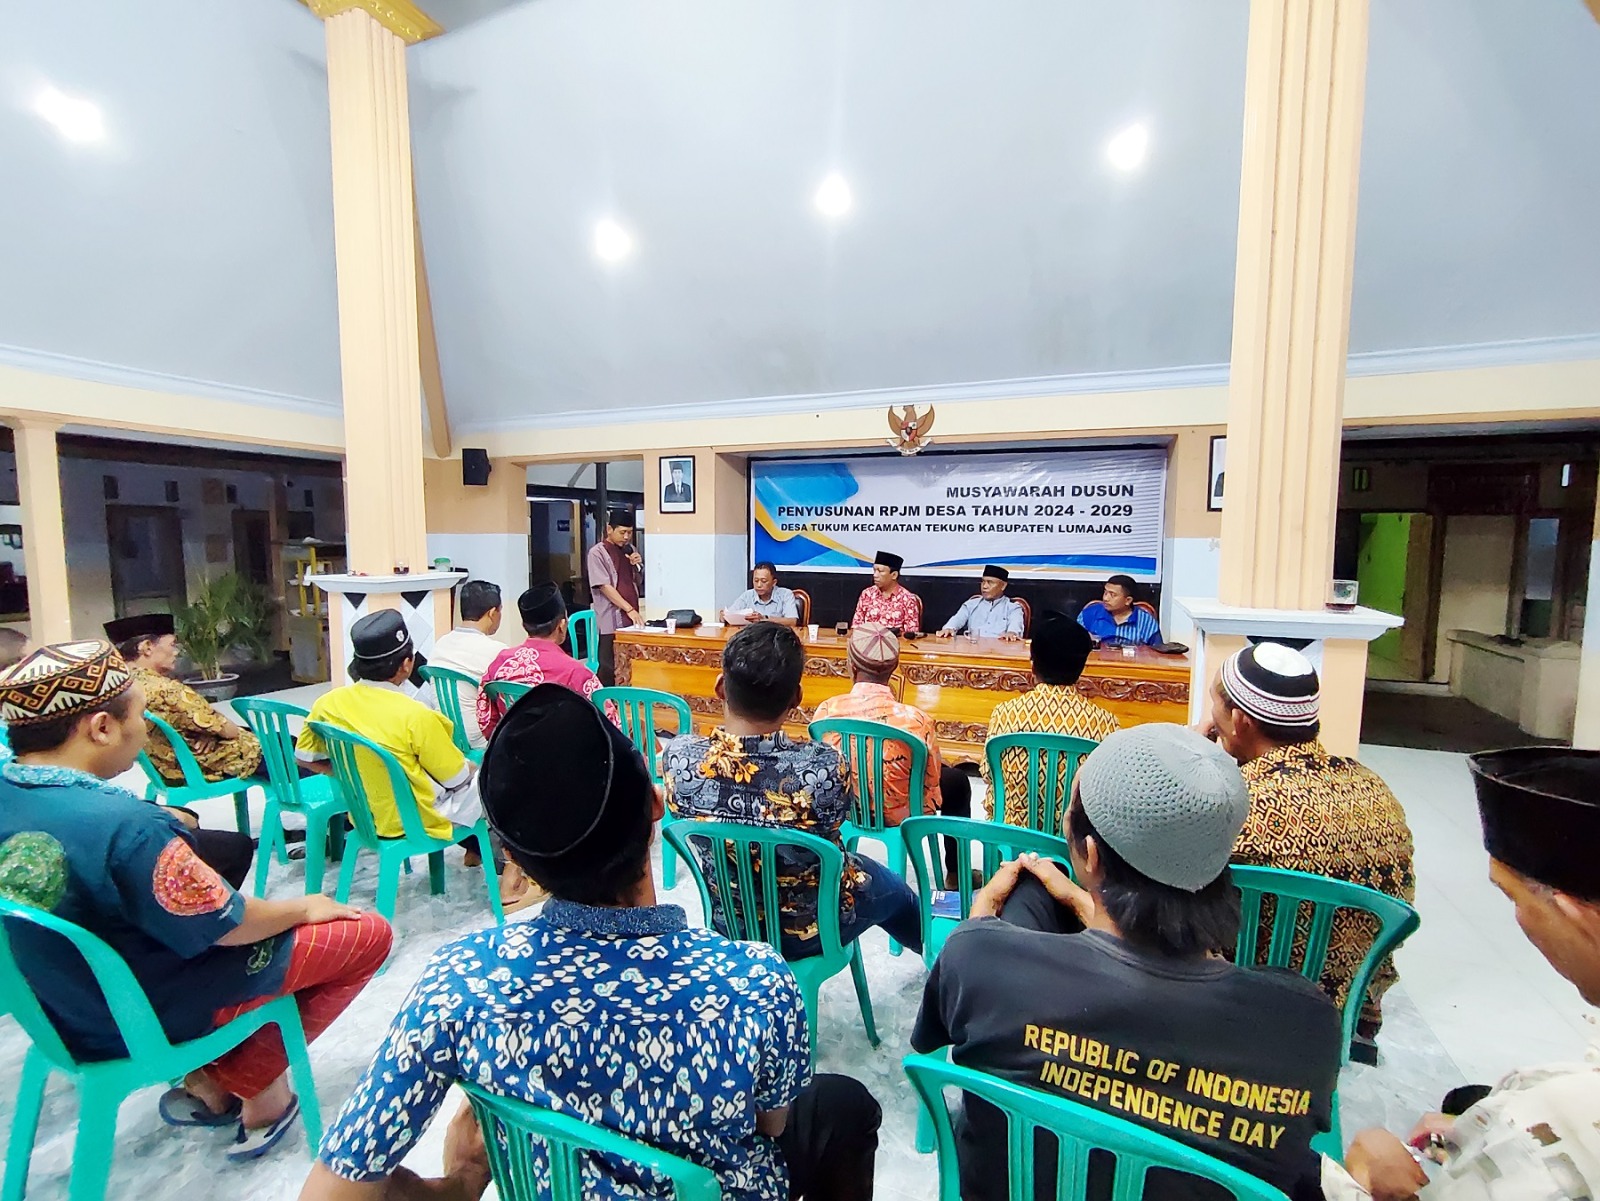 Musyawarah Dusun Penyusunan RPJM Desa 2024-2029 di Desa Tukum, Langkah Menuju Pembangunan Berkelanju